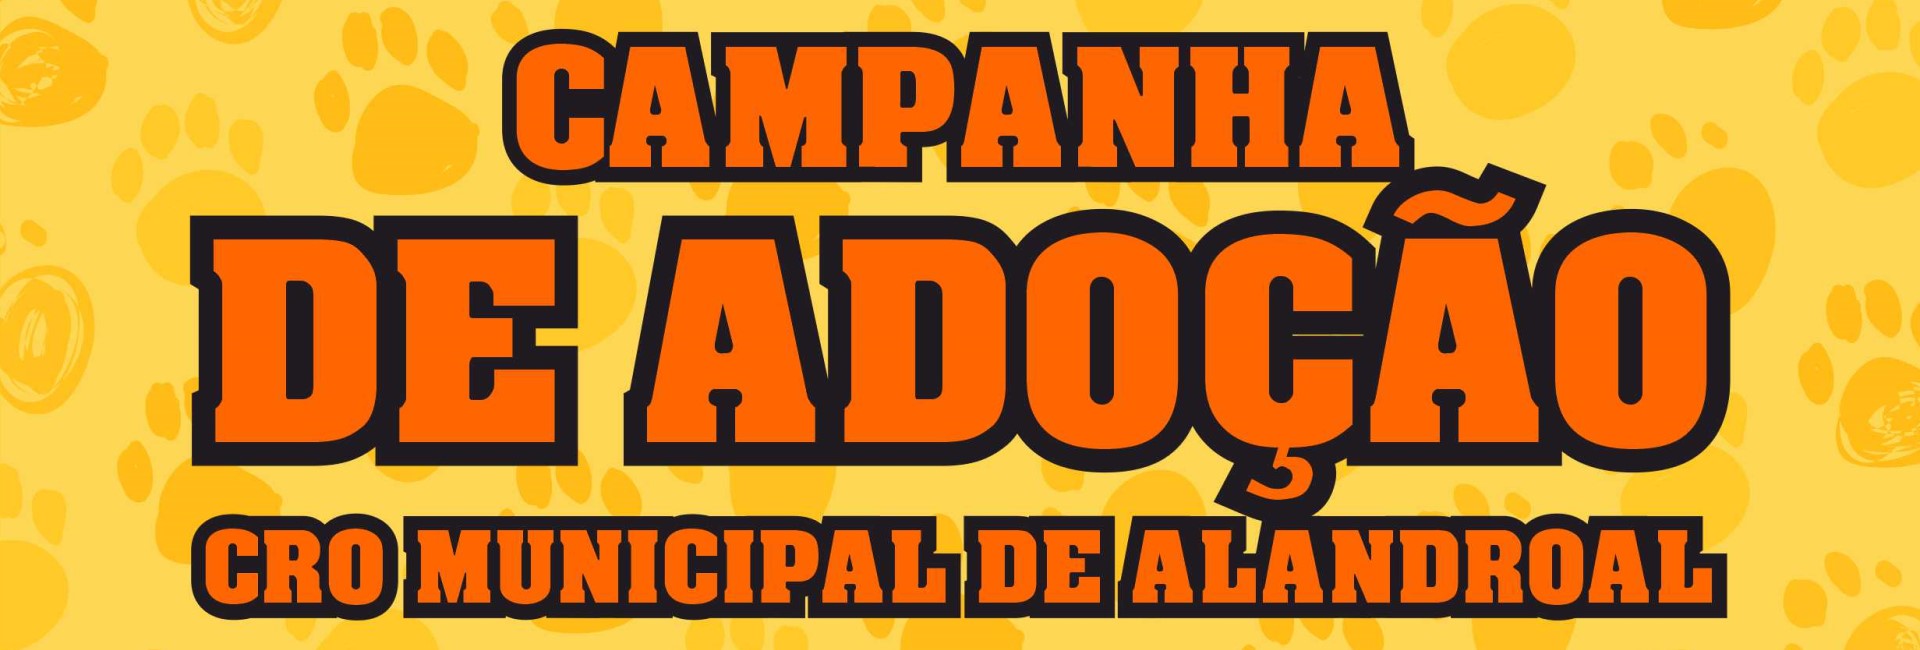 (Português) Campanha de Adoção – CRO Municipal de Alandroal